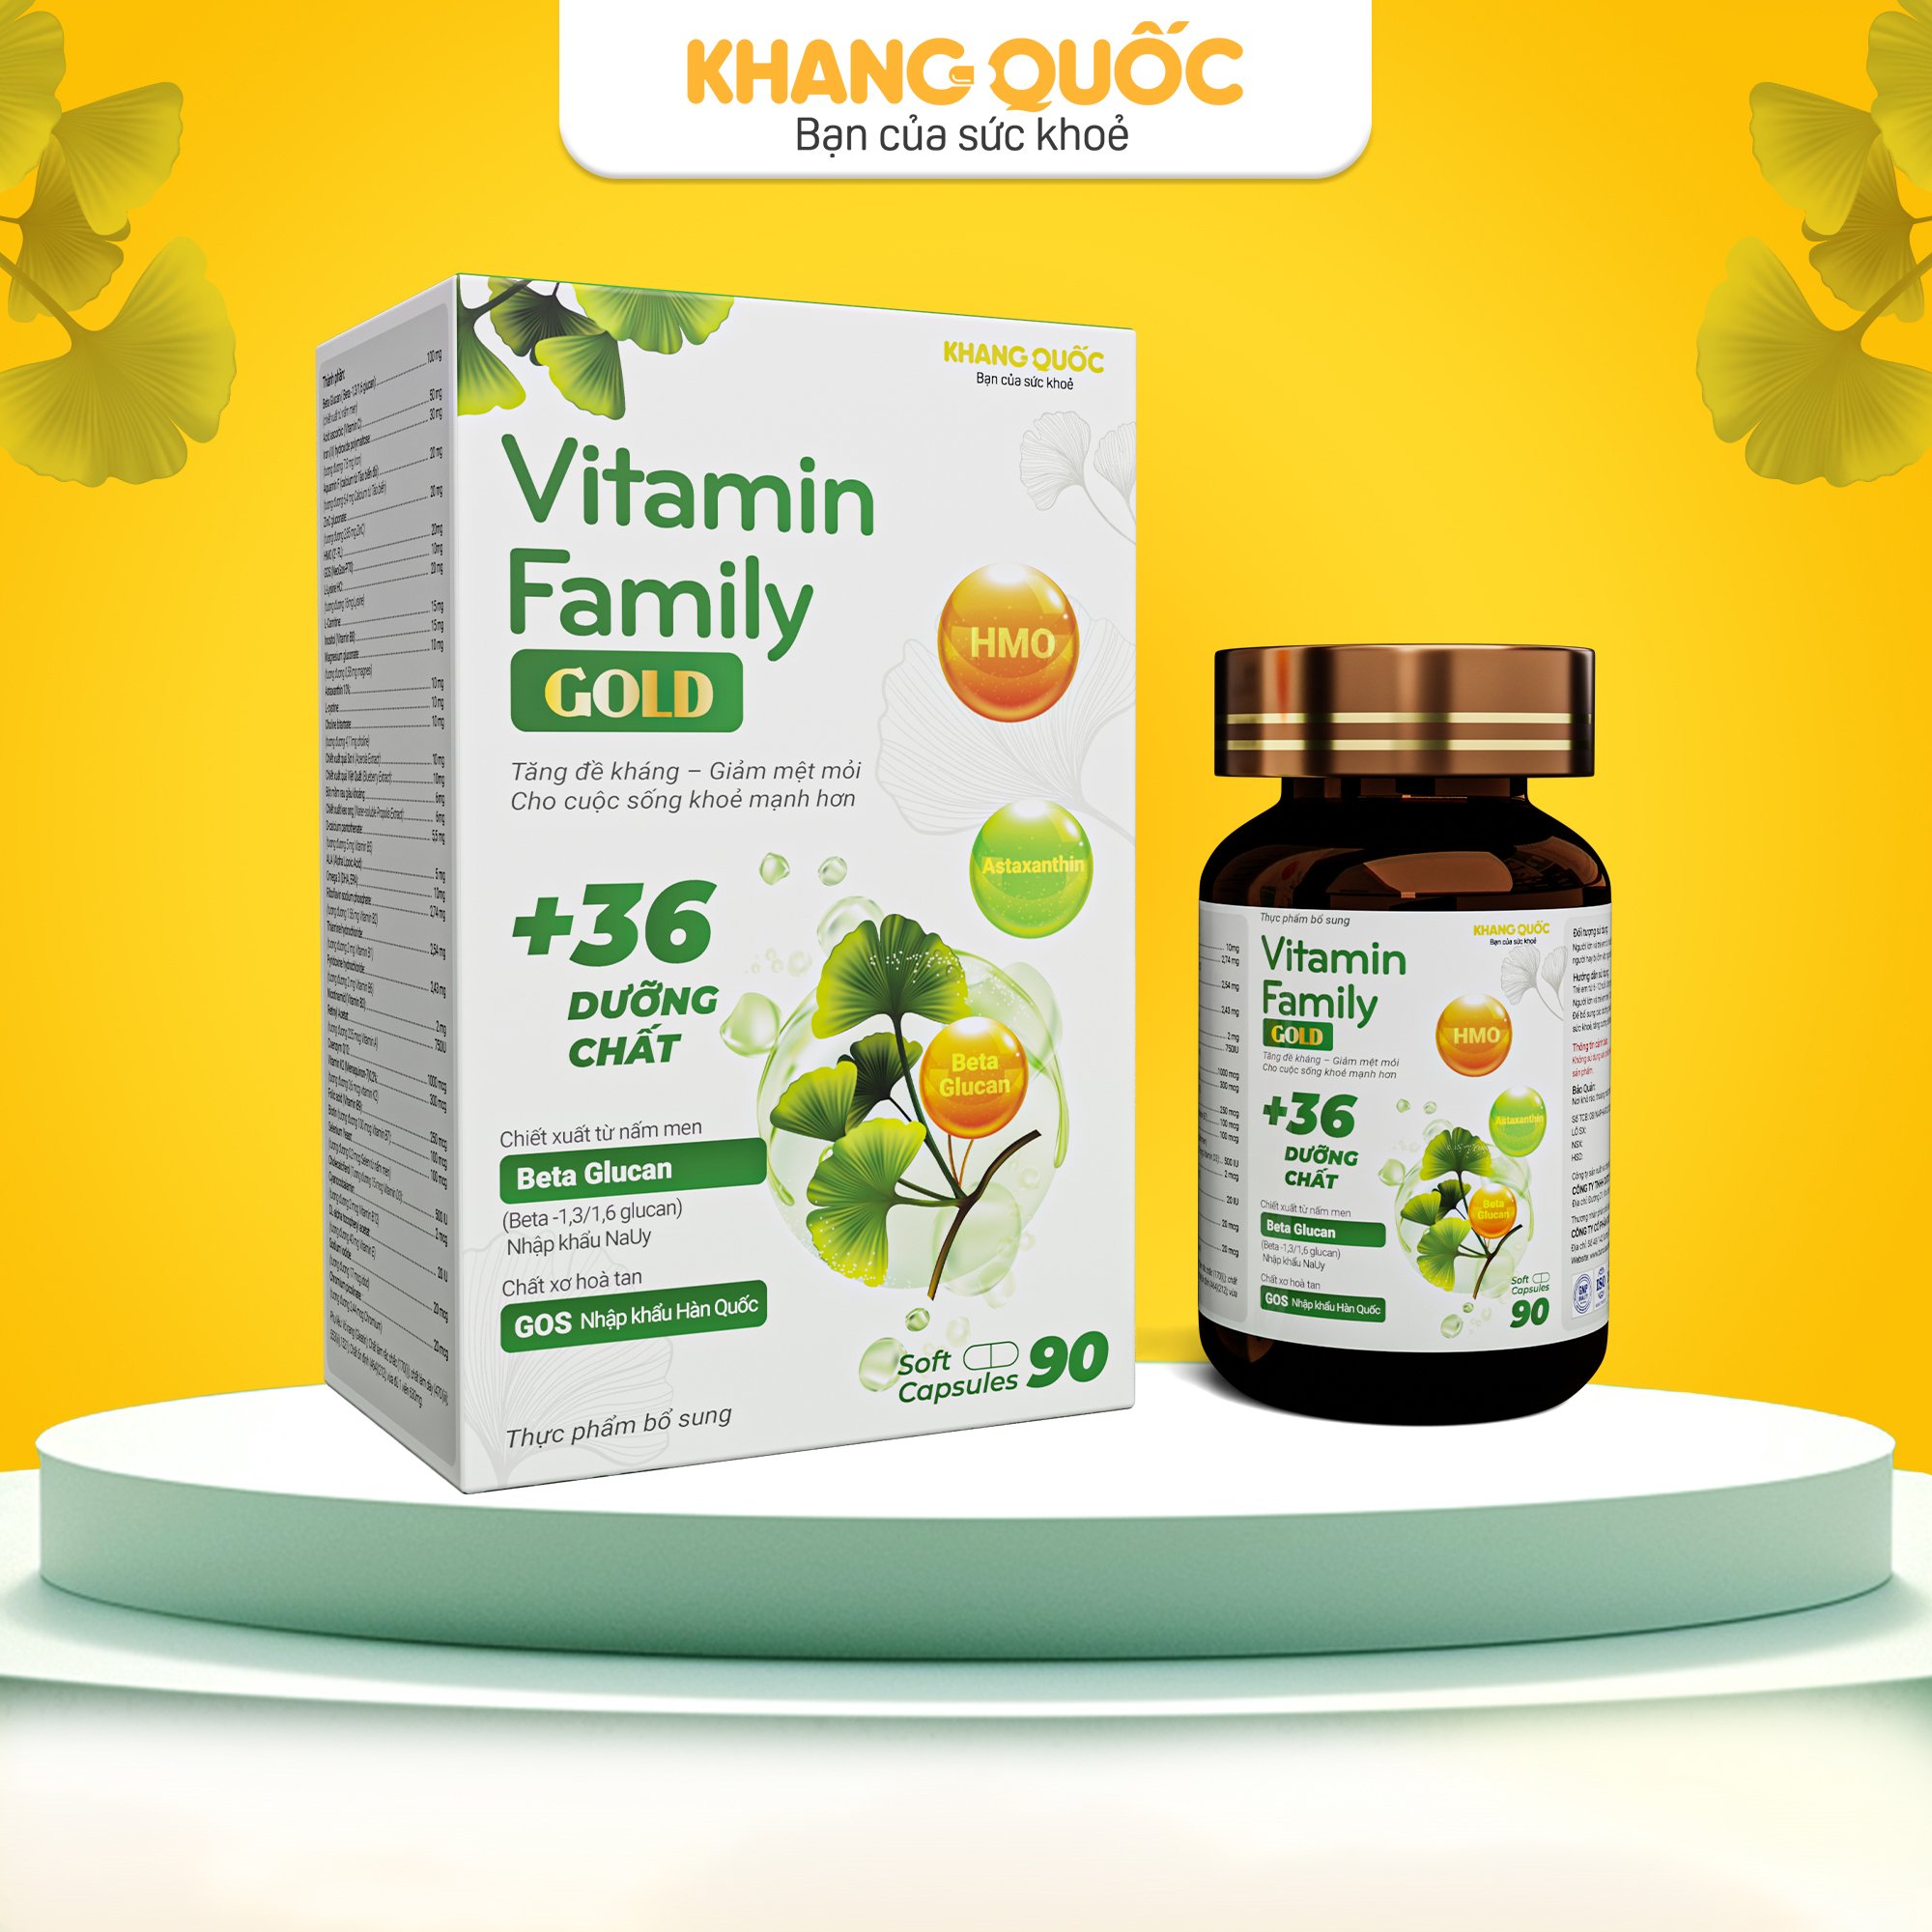 Vitamin Family GOLD - Giúp tăng cường đề kháng